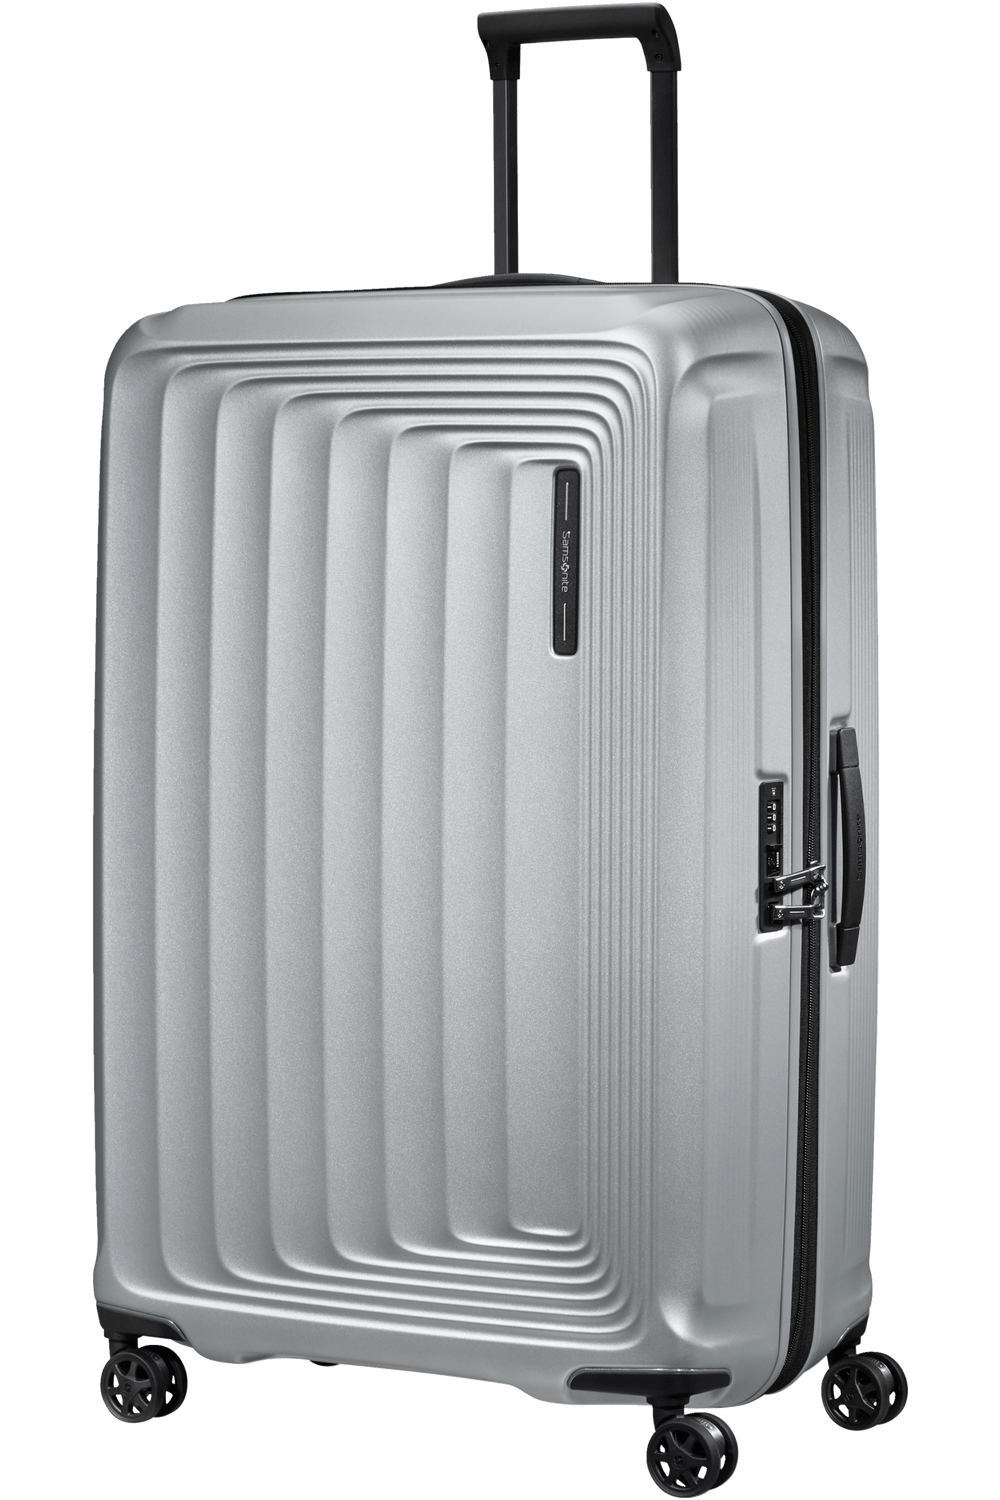 Samsonite Nuon Expandable Large Luggage